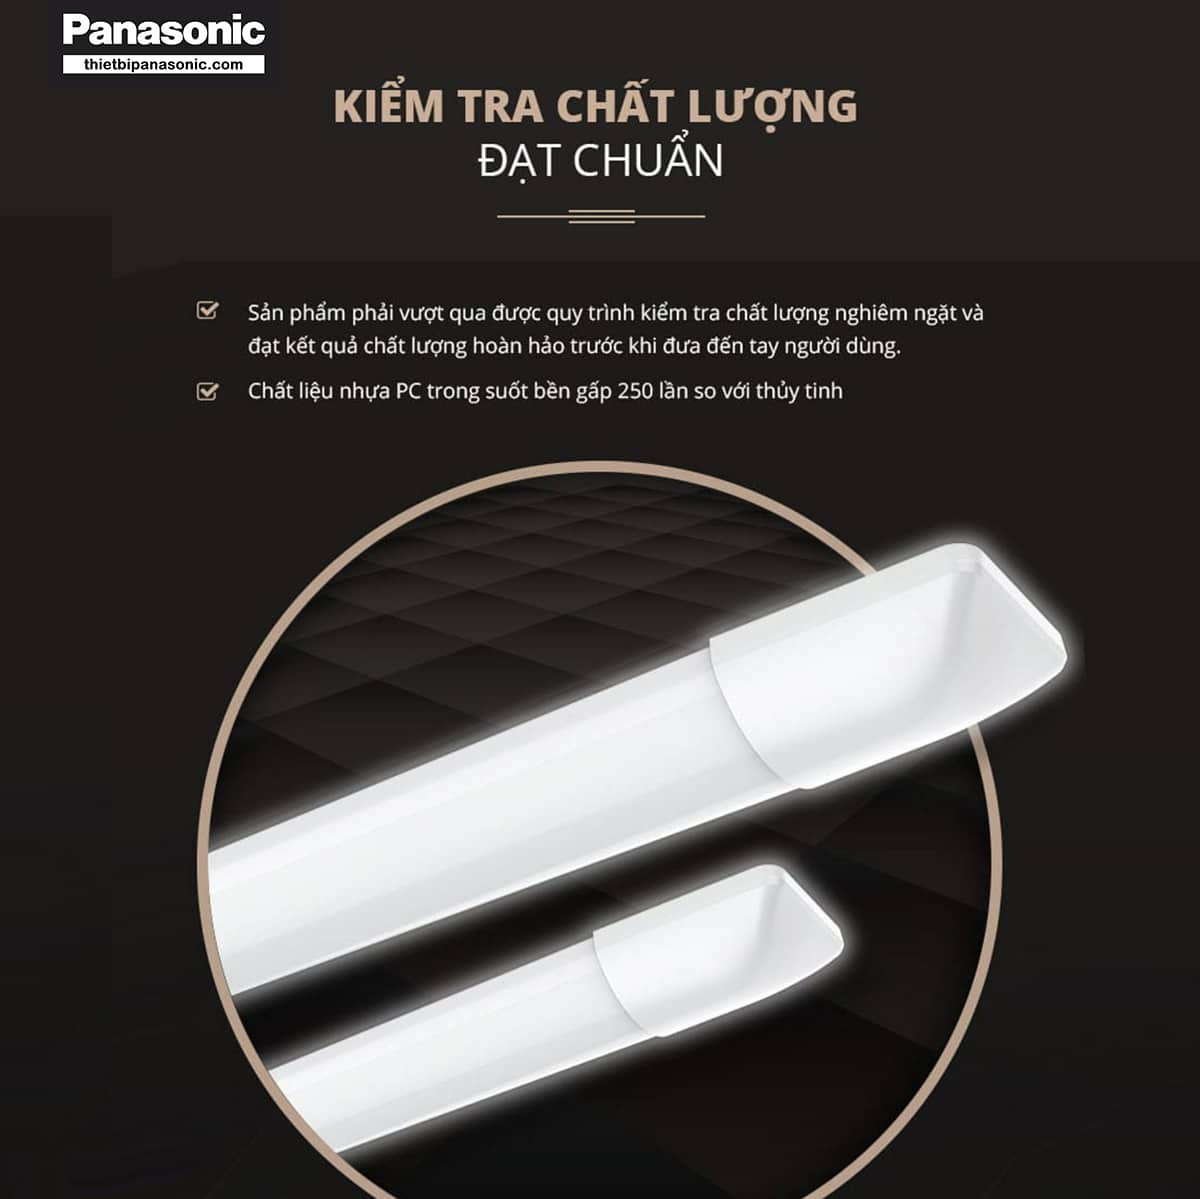 Bóng LED bán nguyệt 60cm 18W được Panasonic chế tạo từ vật liệu PC cao cấp, trong suốt, bền gấp 250 lần thủy tinh